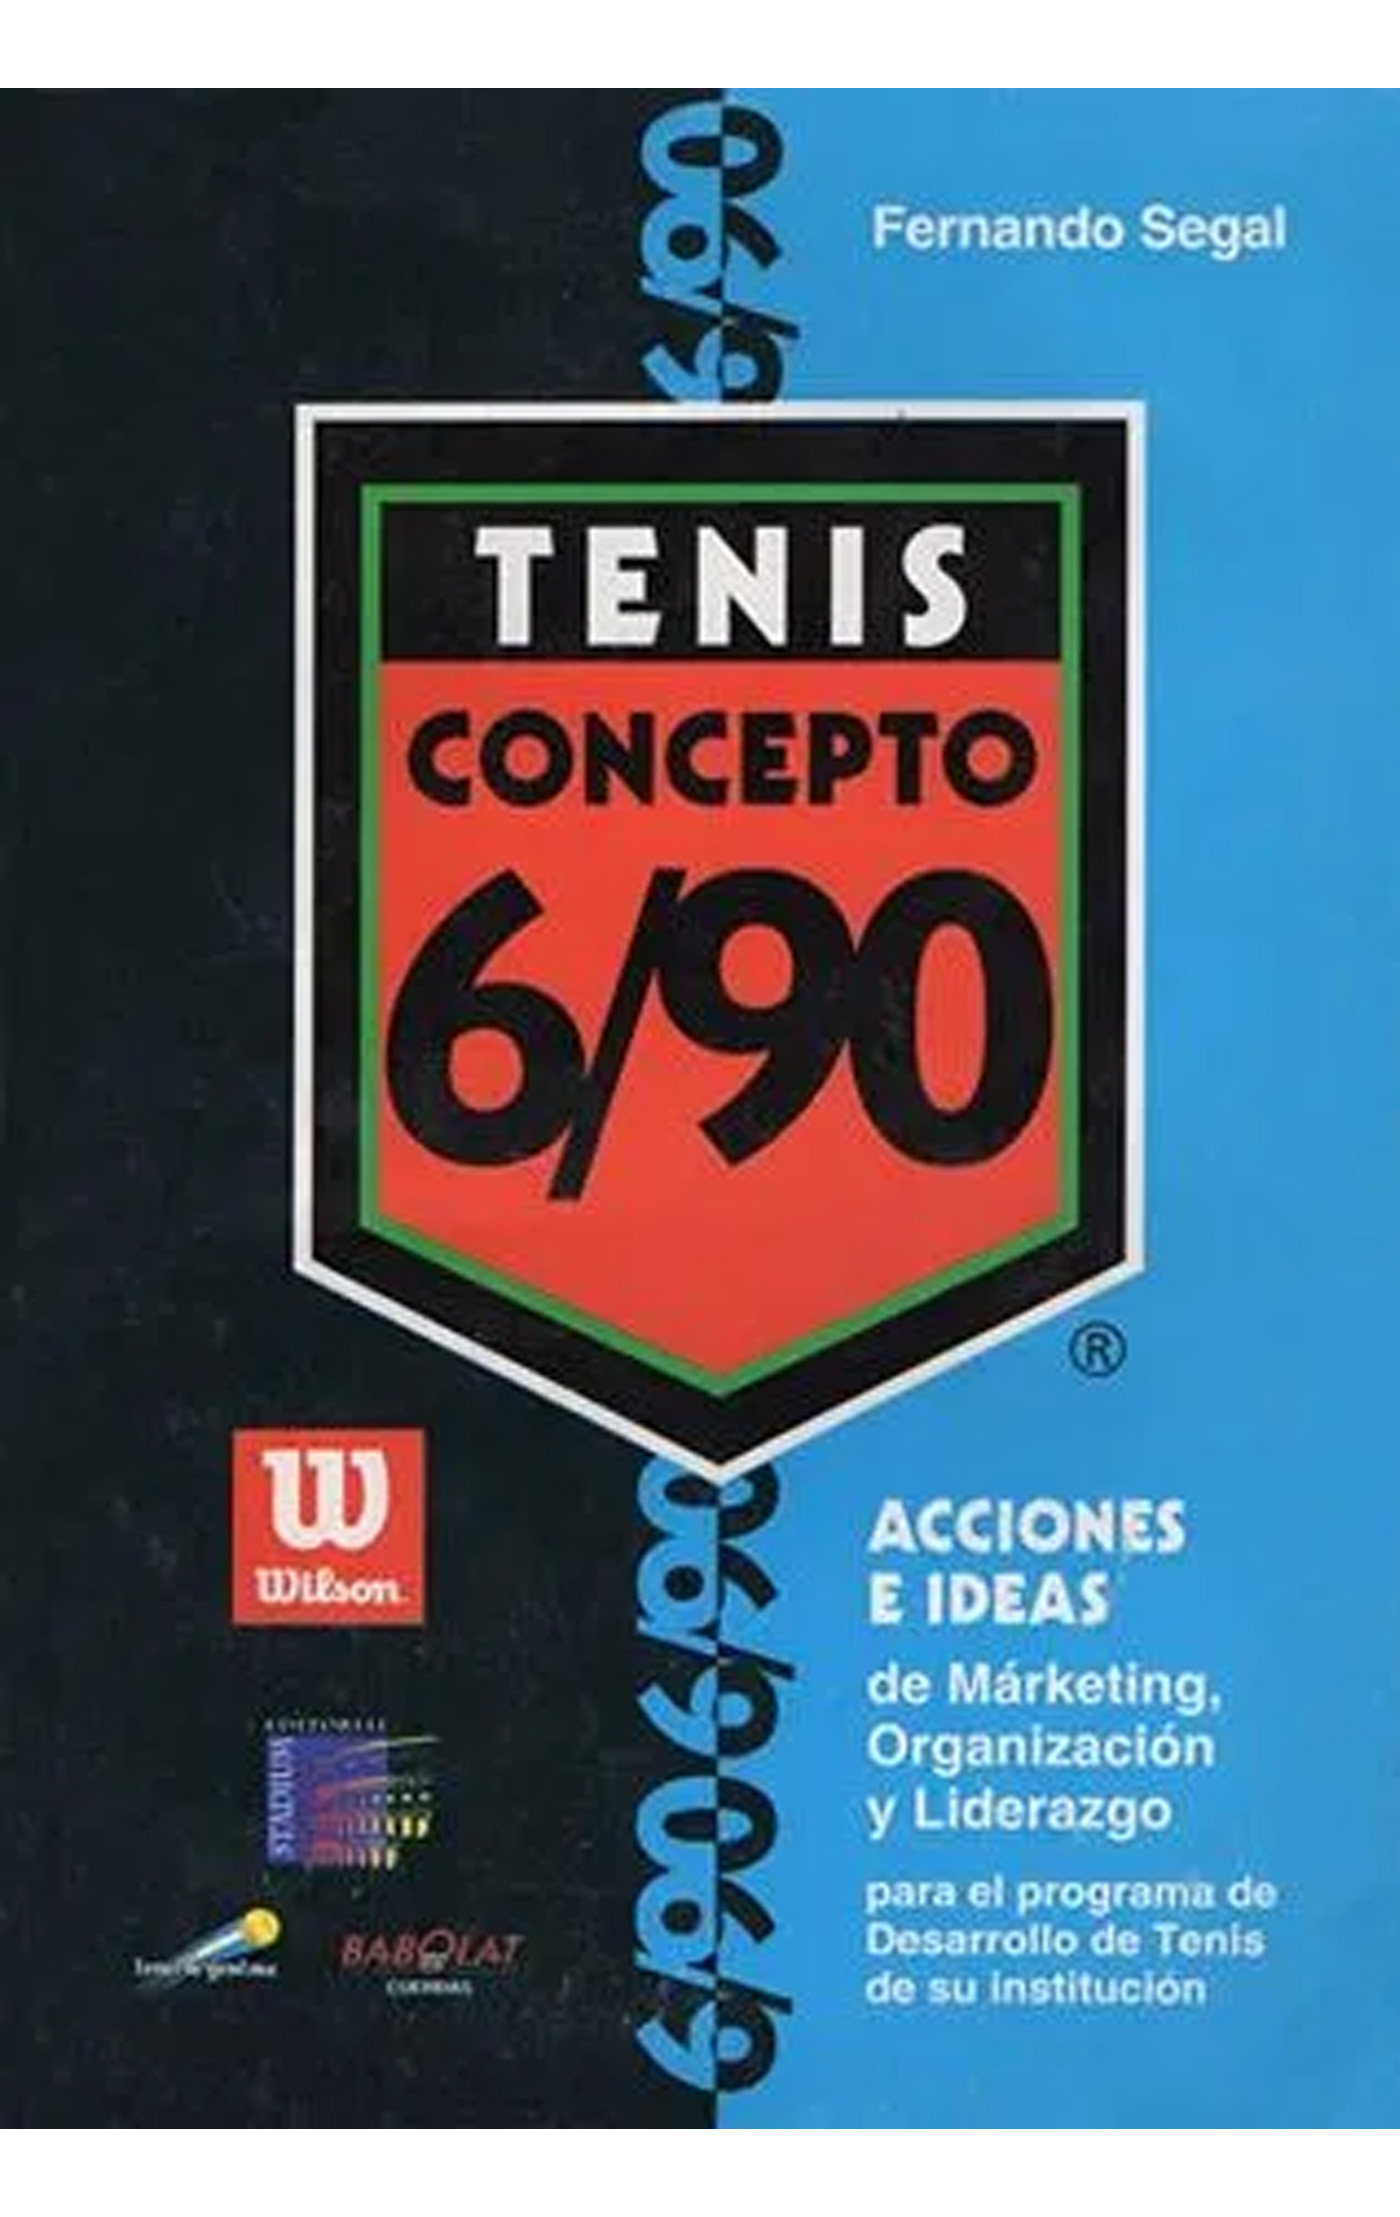 Tenis Concepto 6 90 libro Fernando Segal